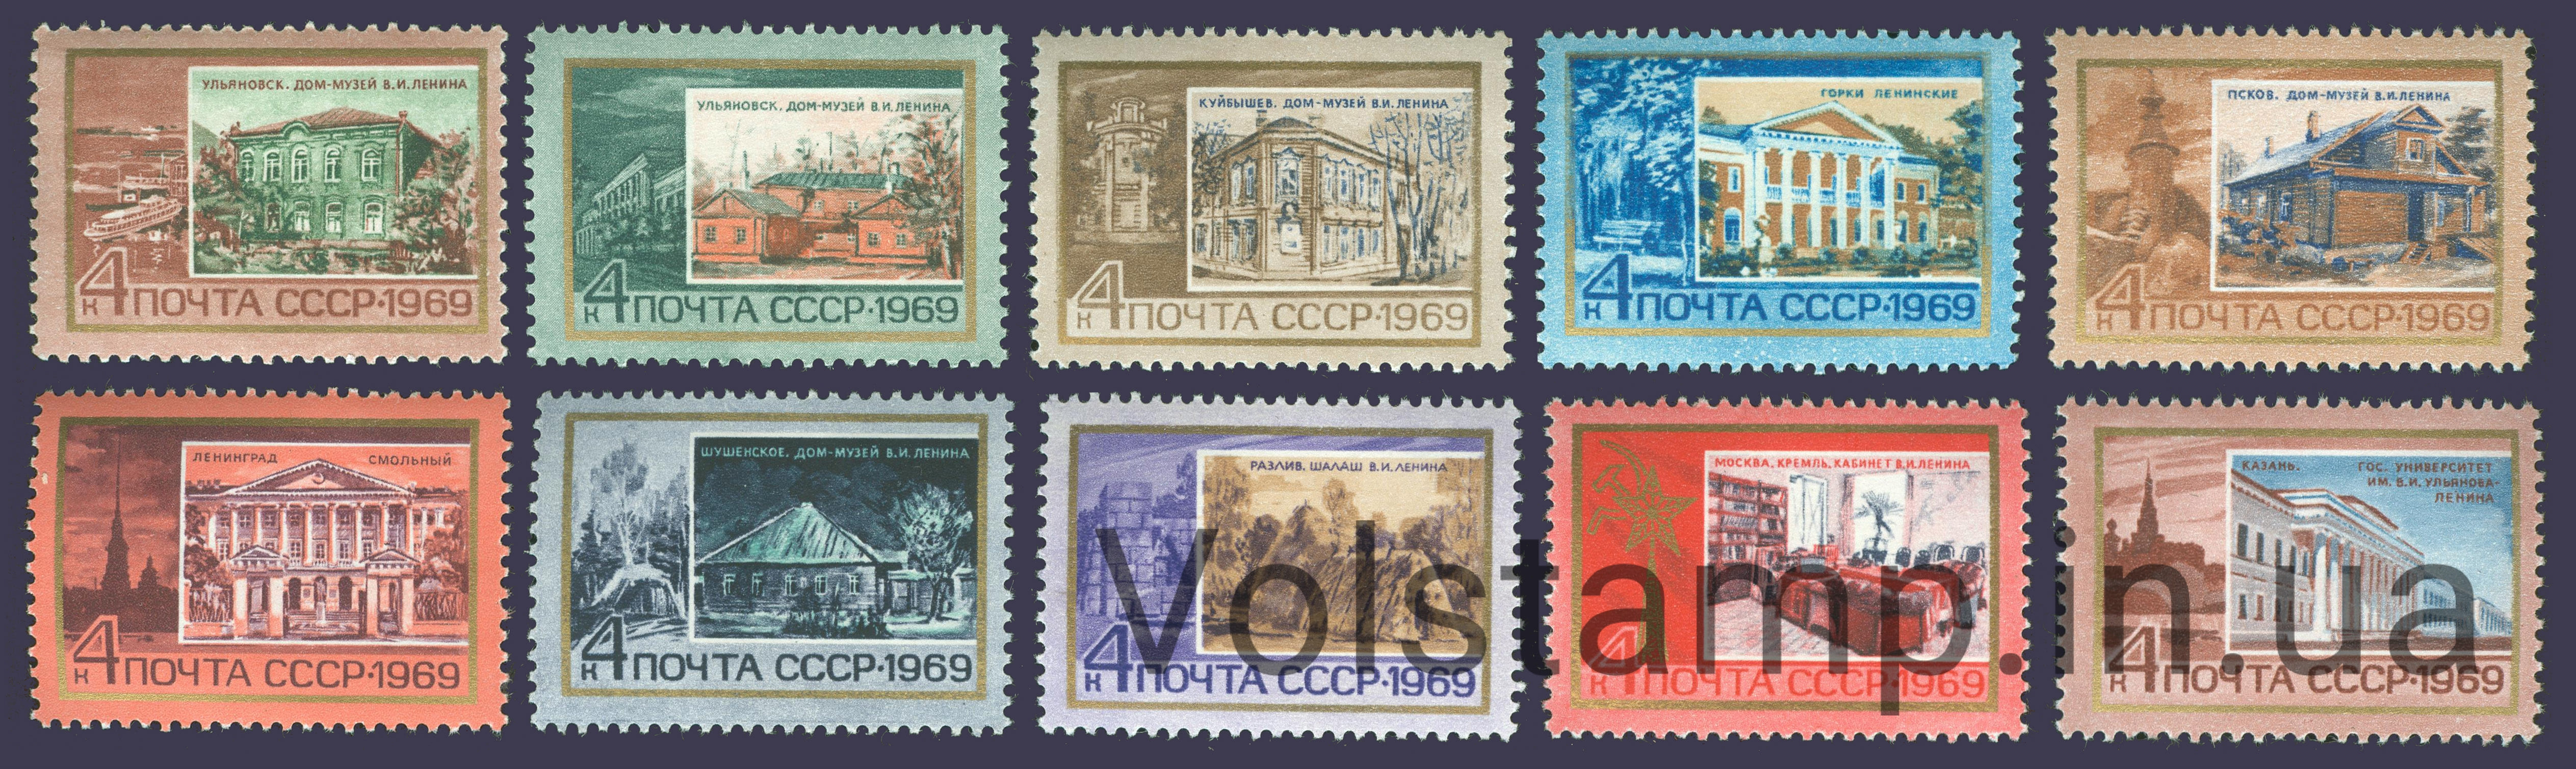 1969 серия марок Памятные ленинские места в СССР №3658-3667